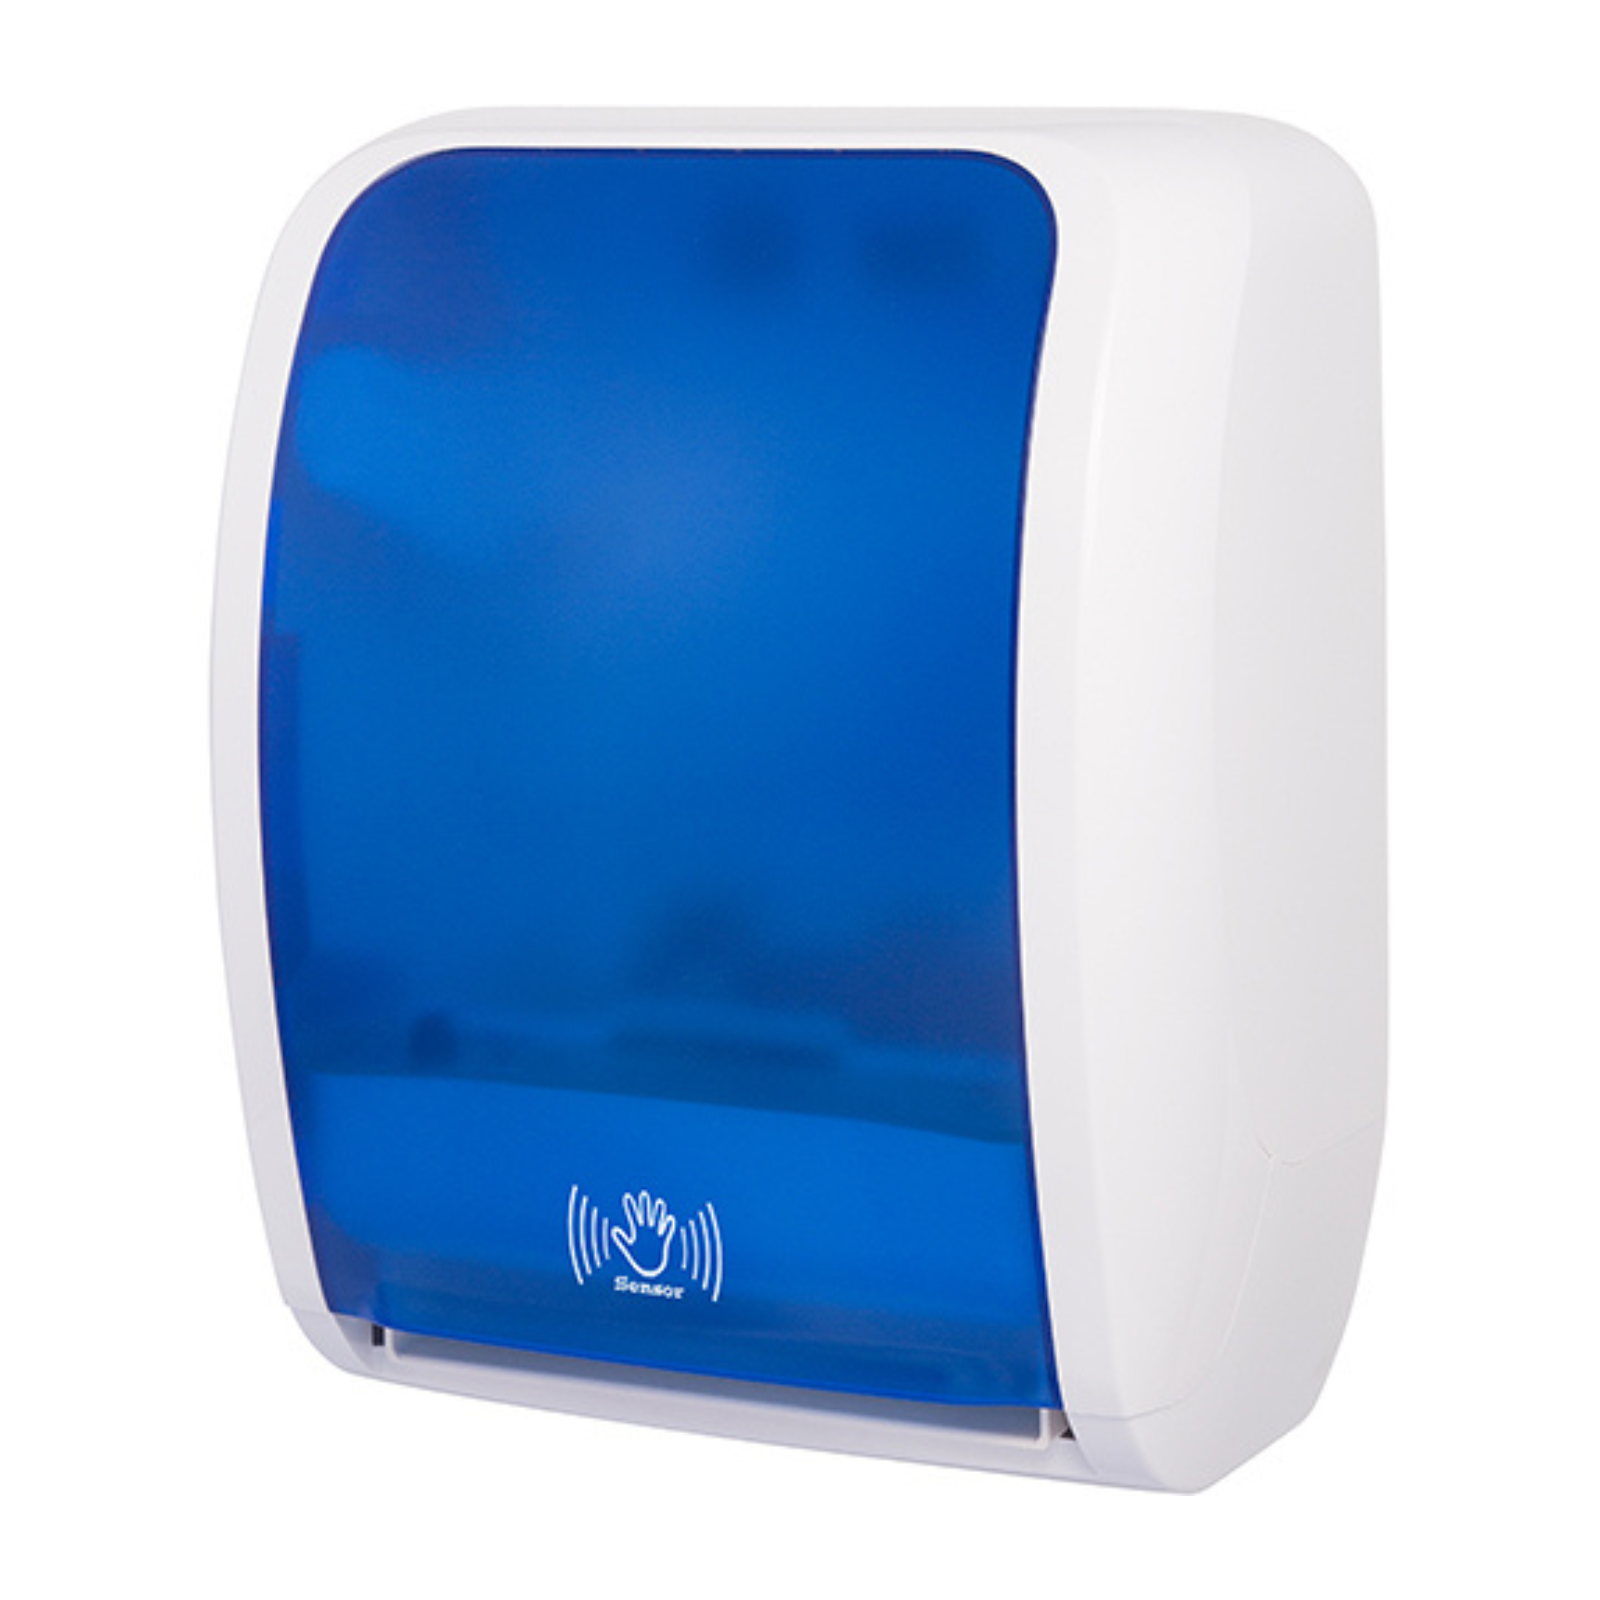 Pura - Hand Towel Roll Dispenser (Sensor) - White/Blue